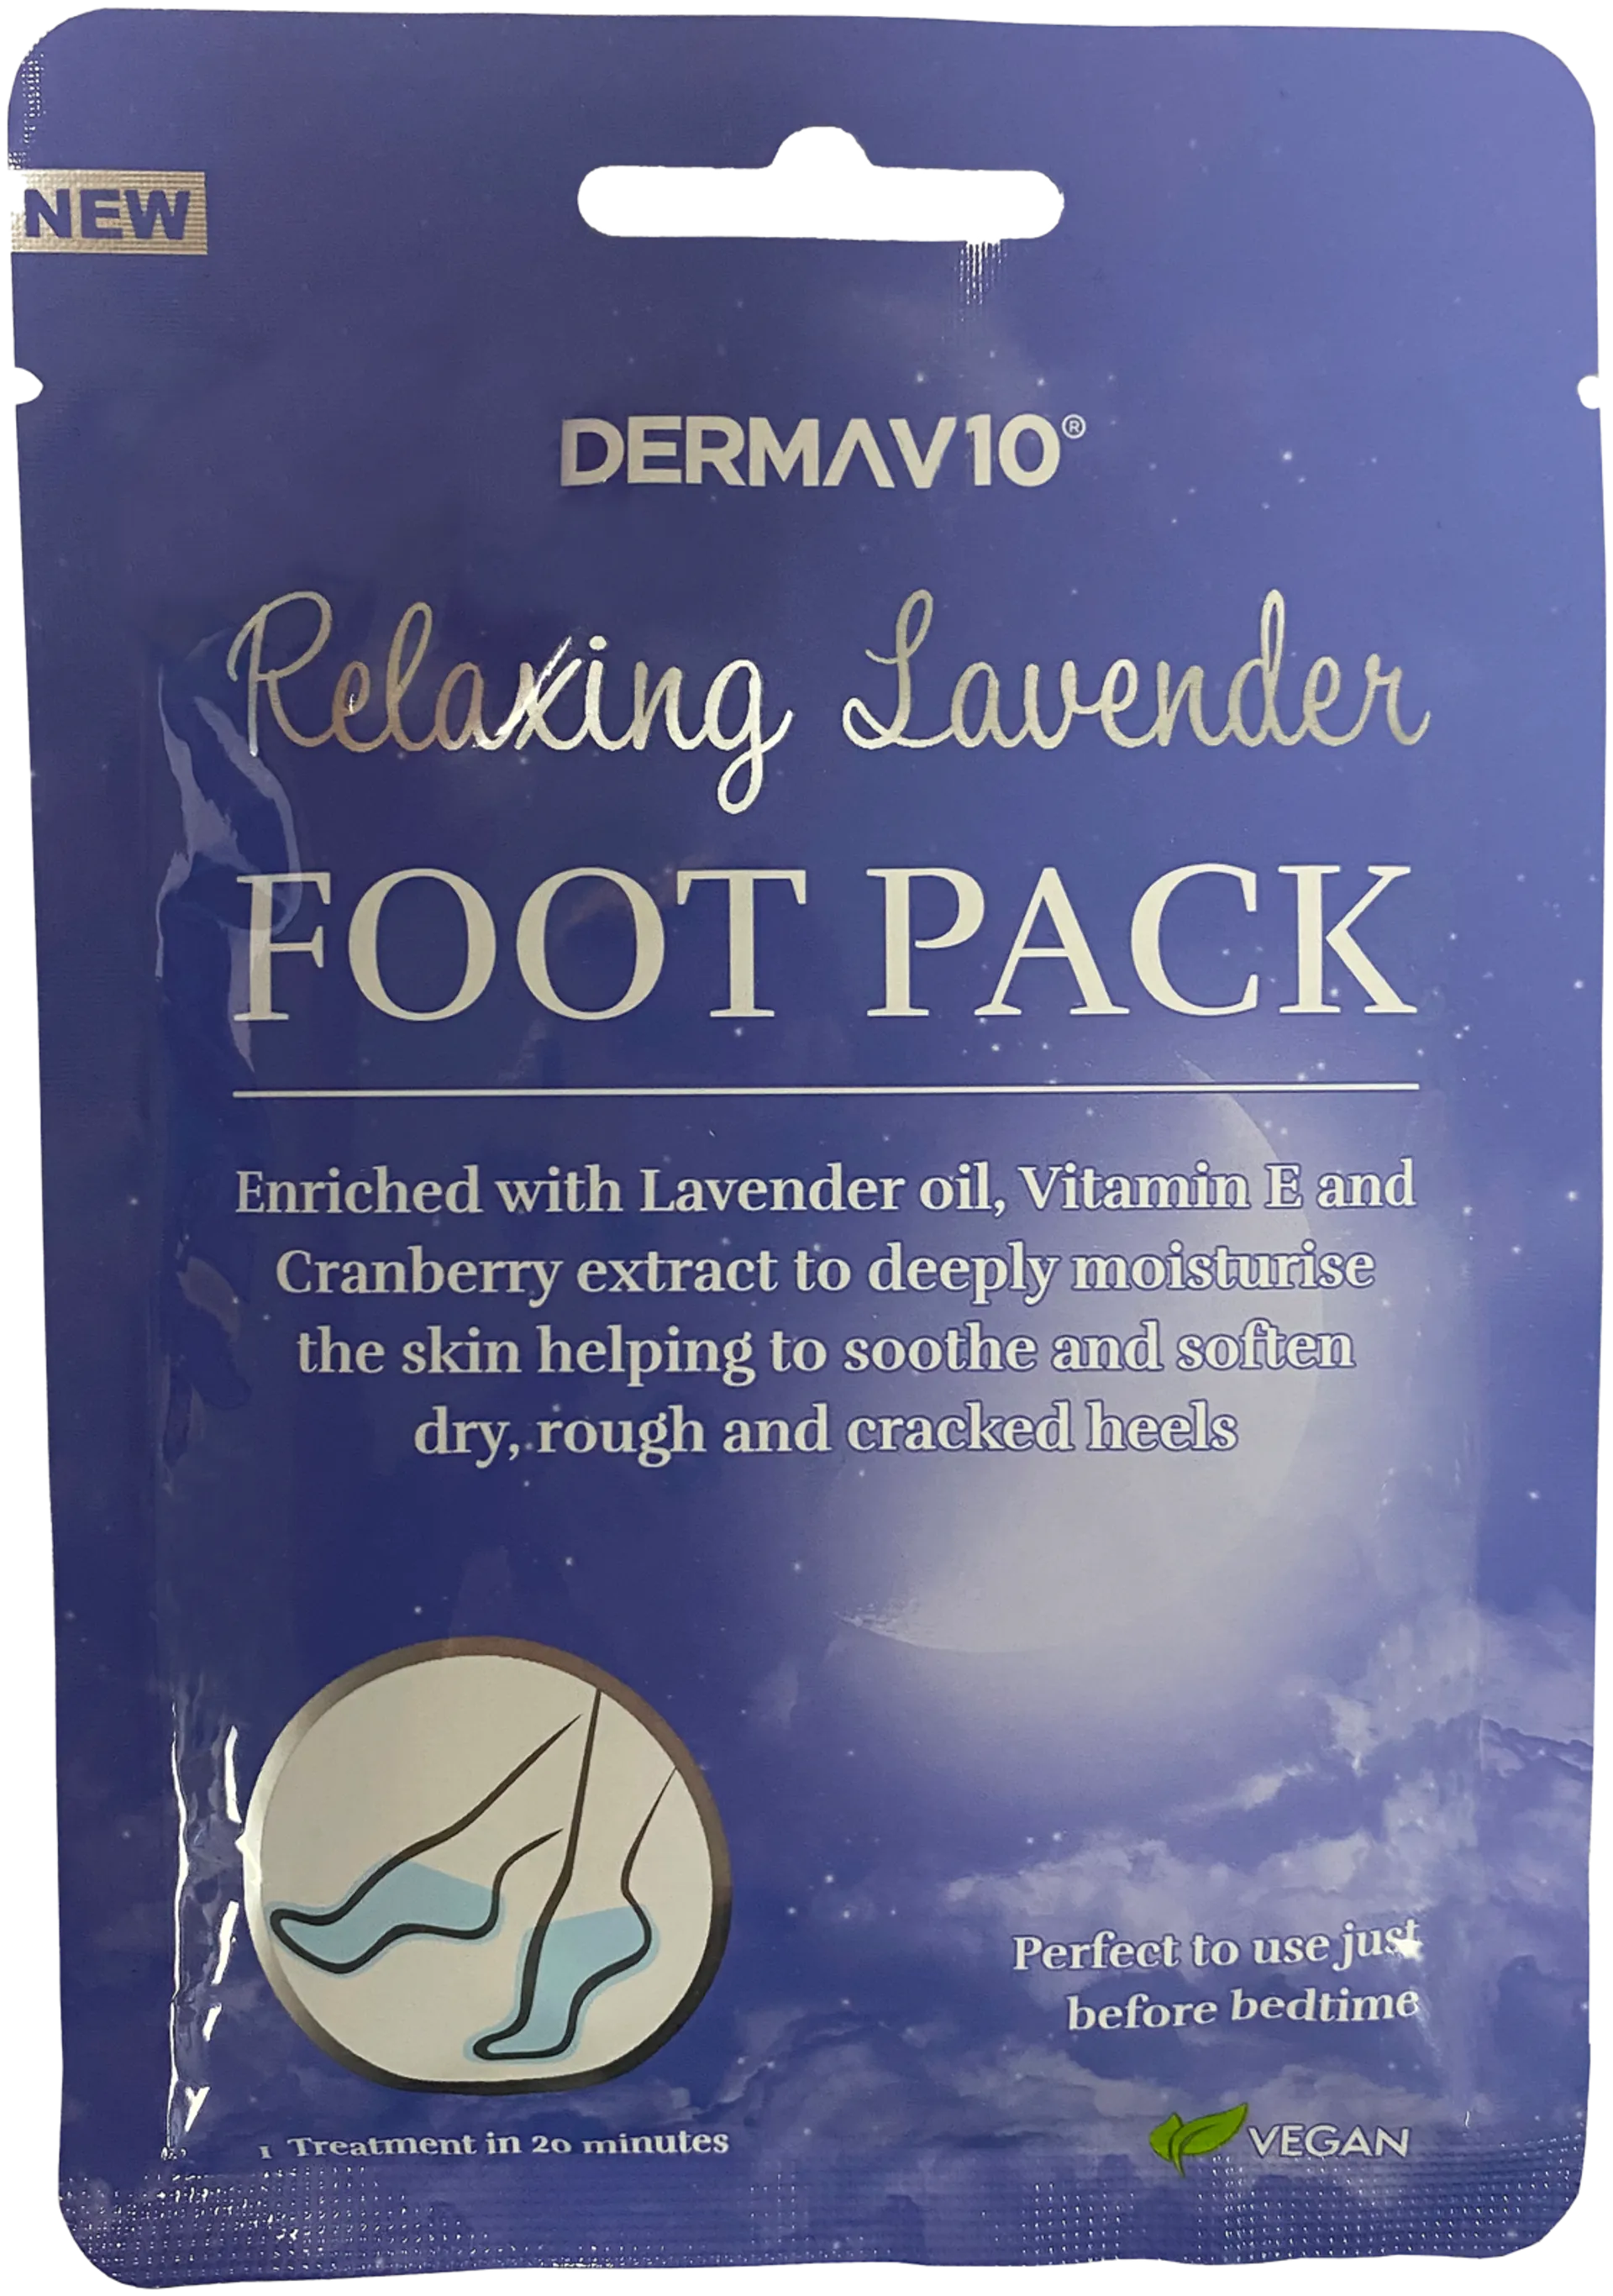 Derma V10 rentouttava jalkanaamio laventeli 1 pari